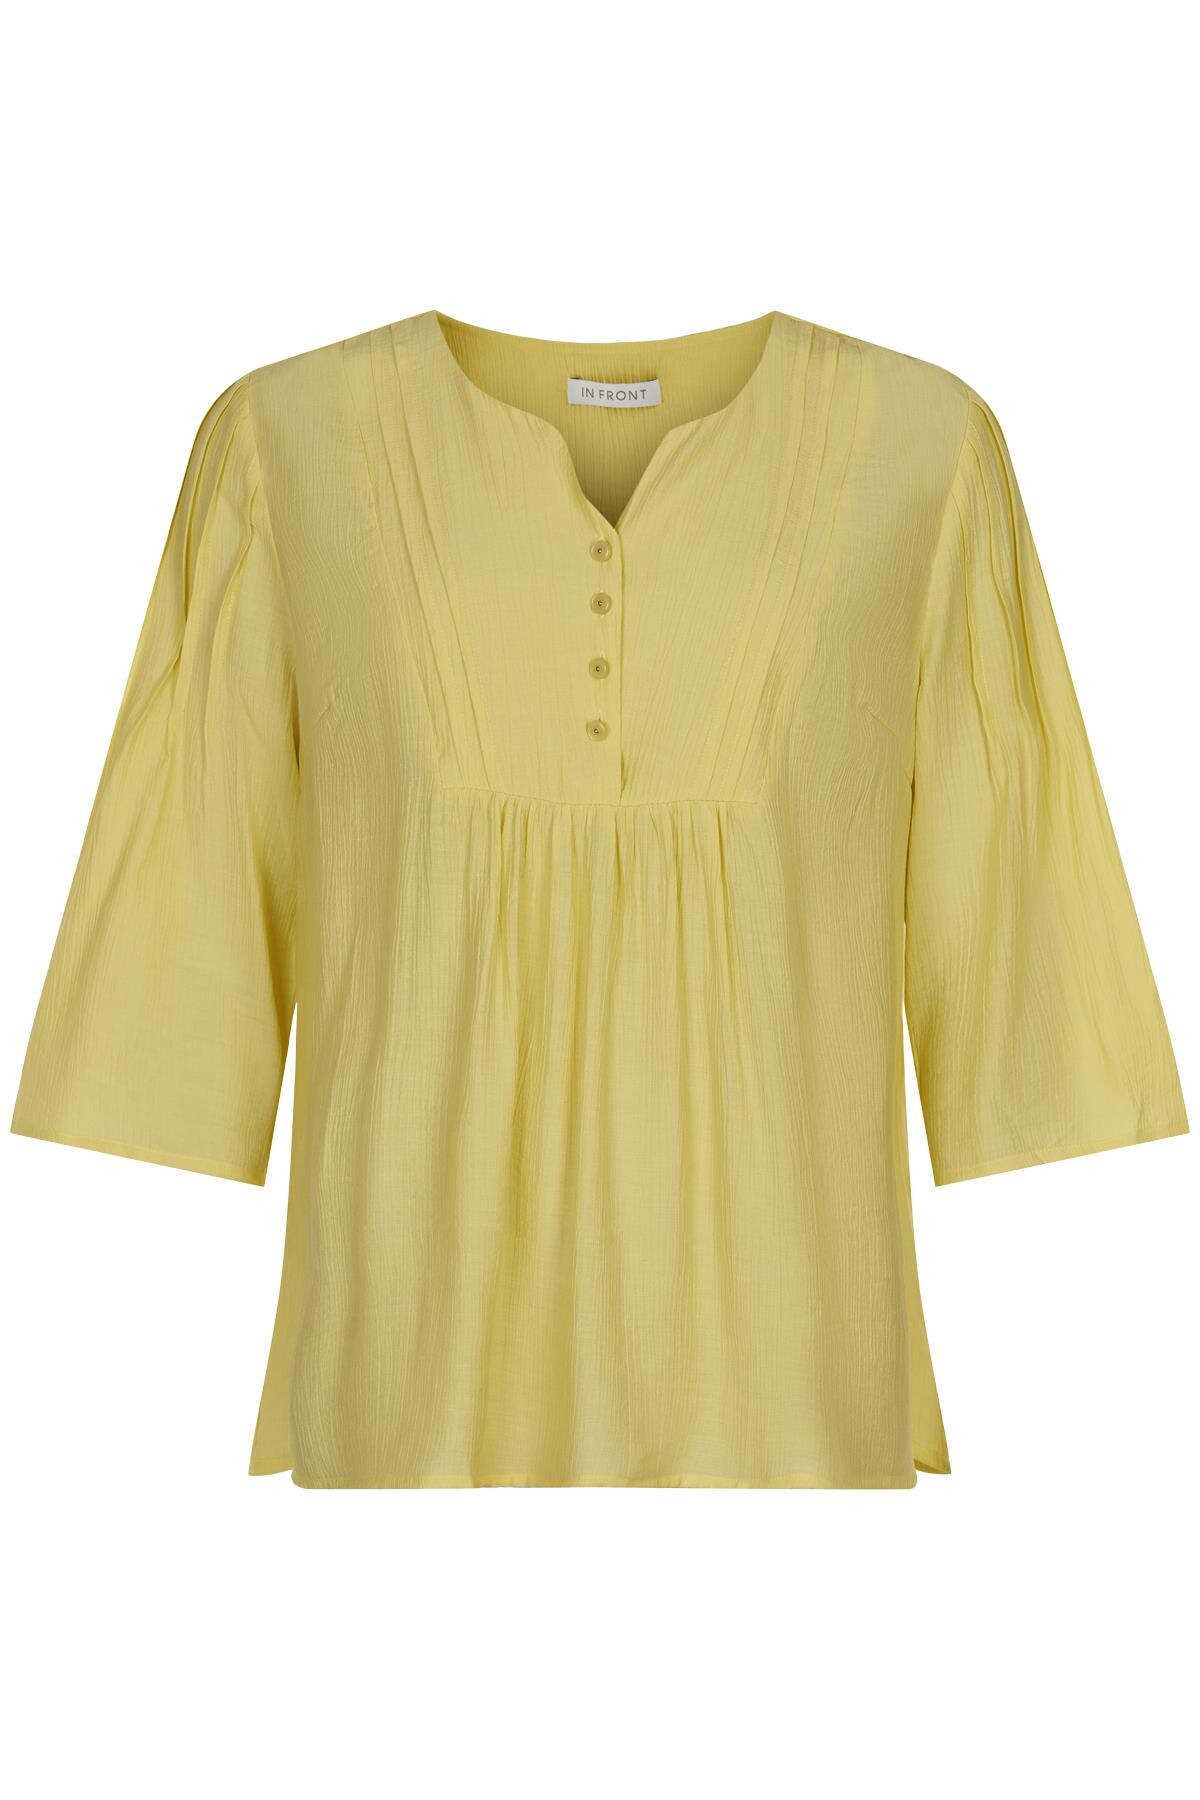 Billede af IN FRONT Mejse Bluse, Farve: Light Yellow, Størrelse: L, Dame